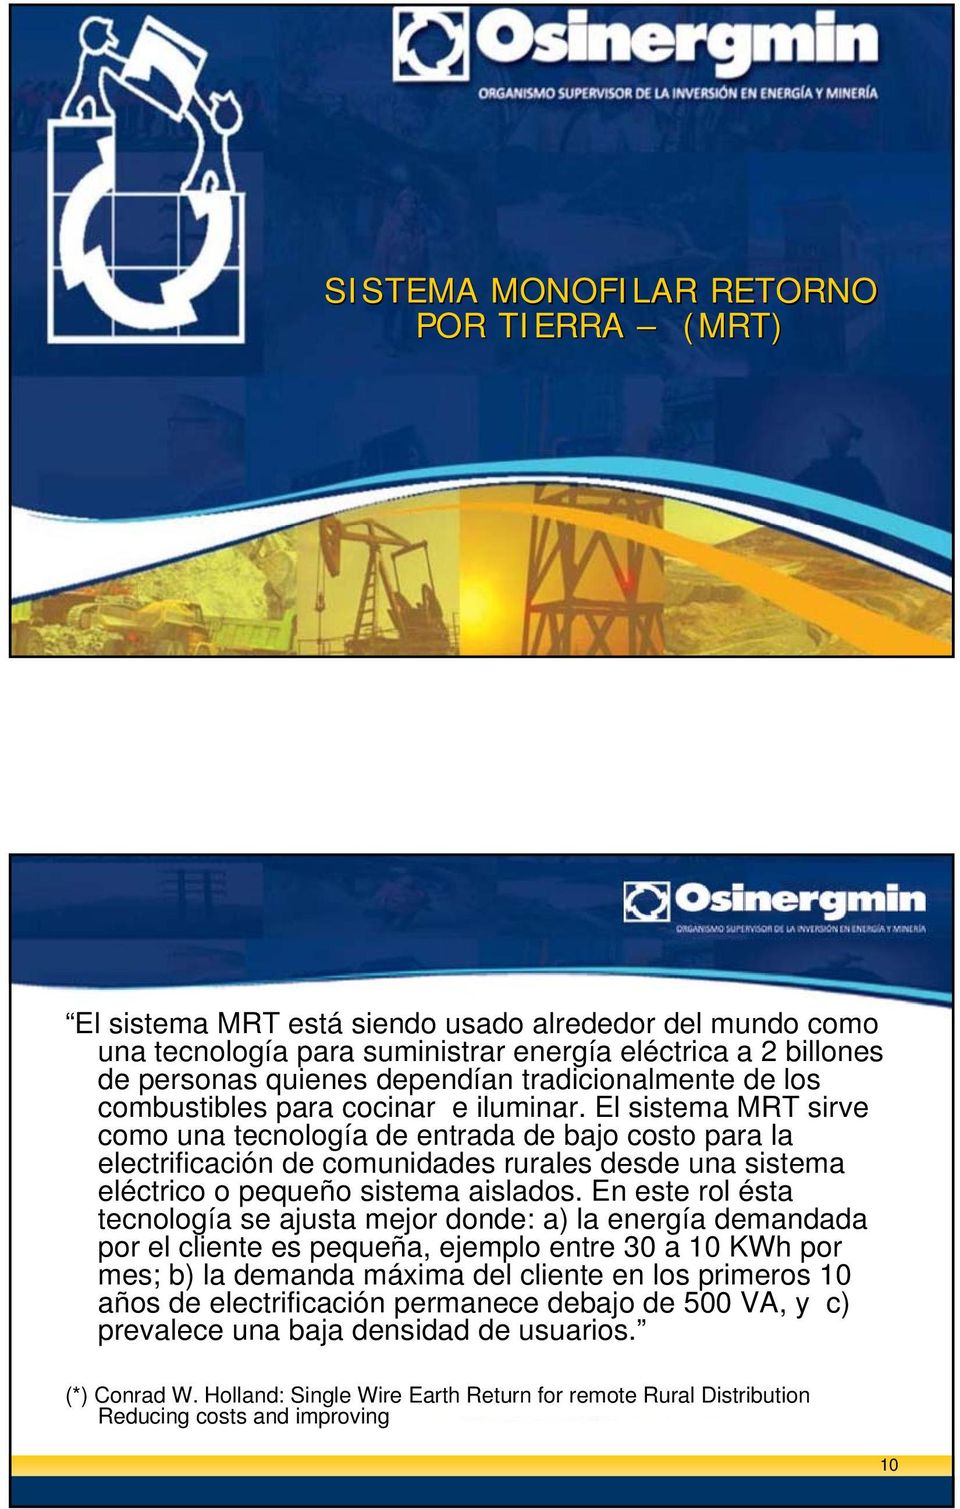 El sistema MRT sirve como una tecnología de entrada de bajo costo para la electrificación de comunidades rurales desde una sistema eléctrico o pequeño sistema aislados.